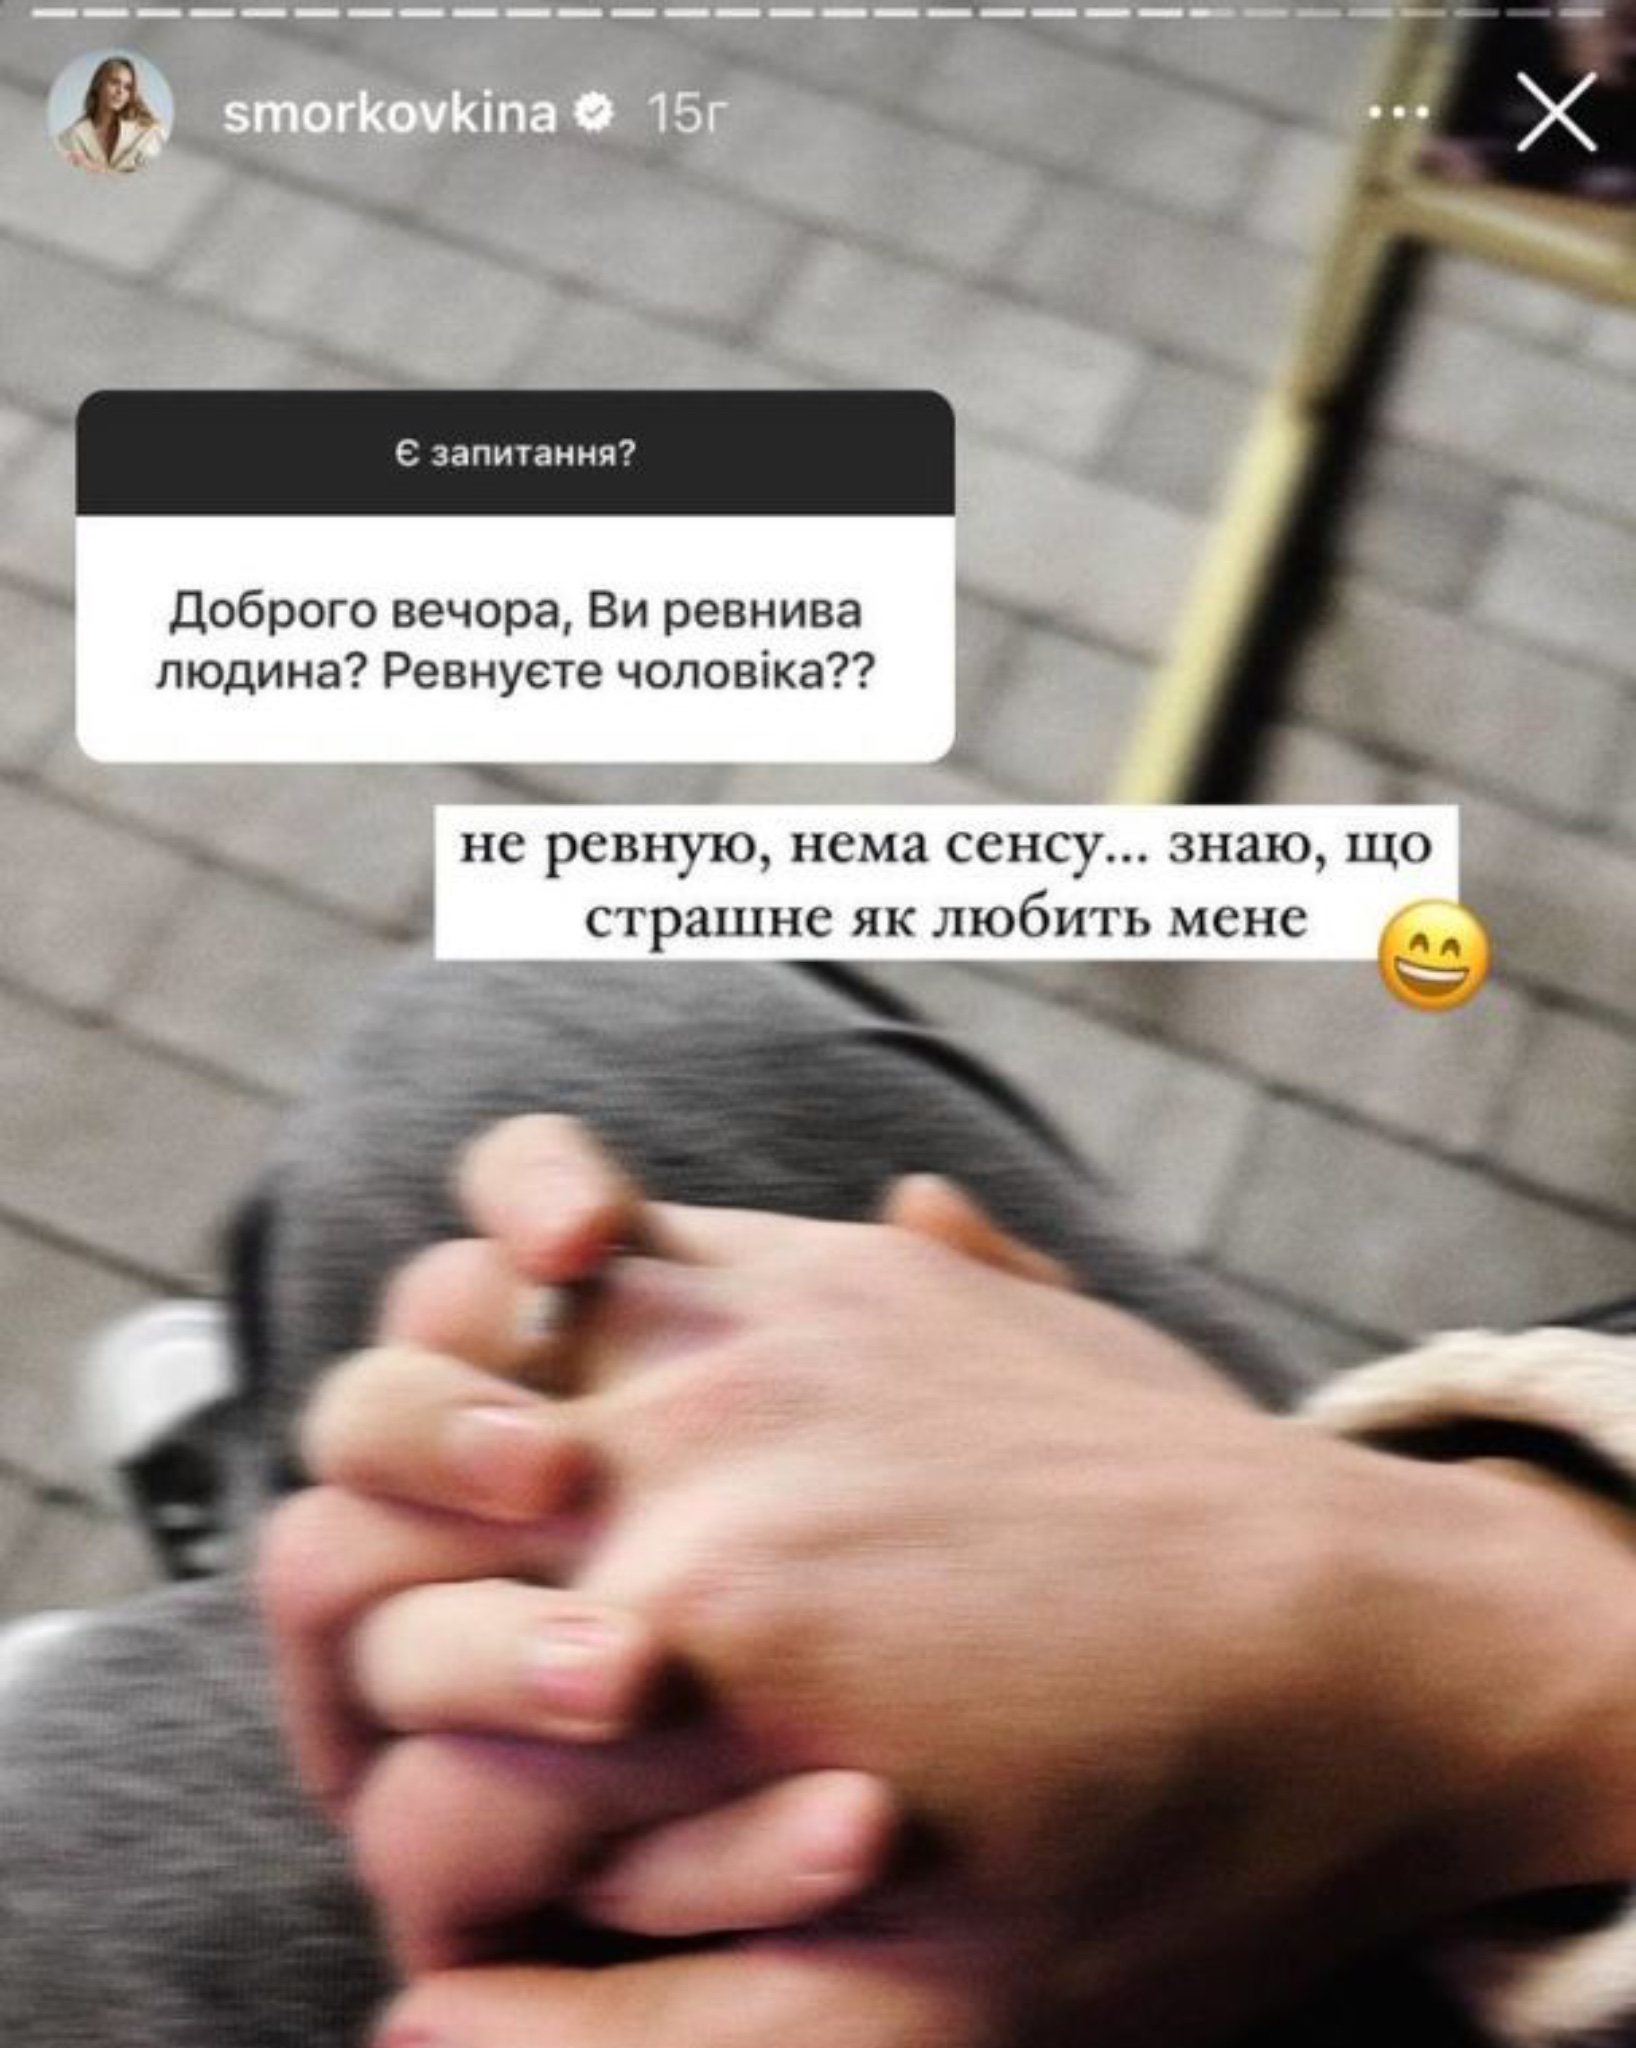 Анна Кошмал розповіла про ревнощі до чоловіка та показала його вперше. Фото з Instagram @smorkovkina